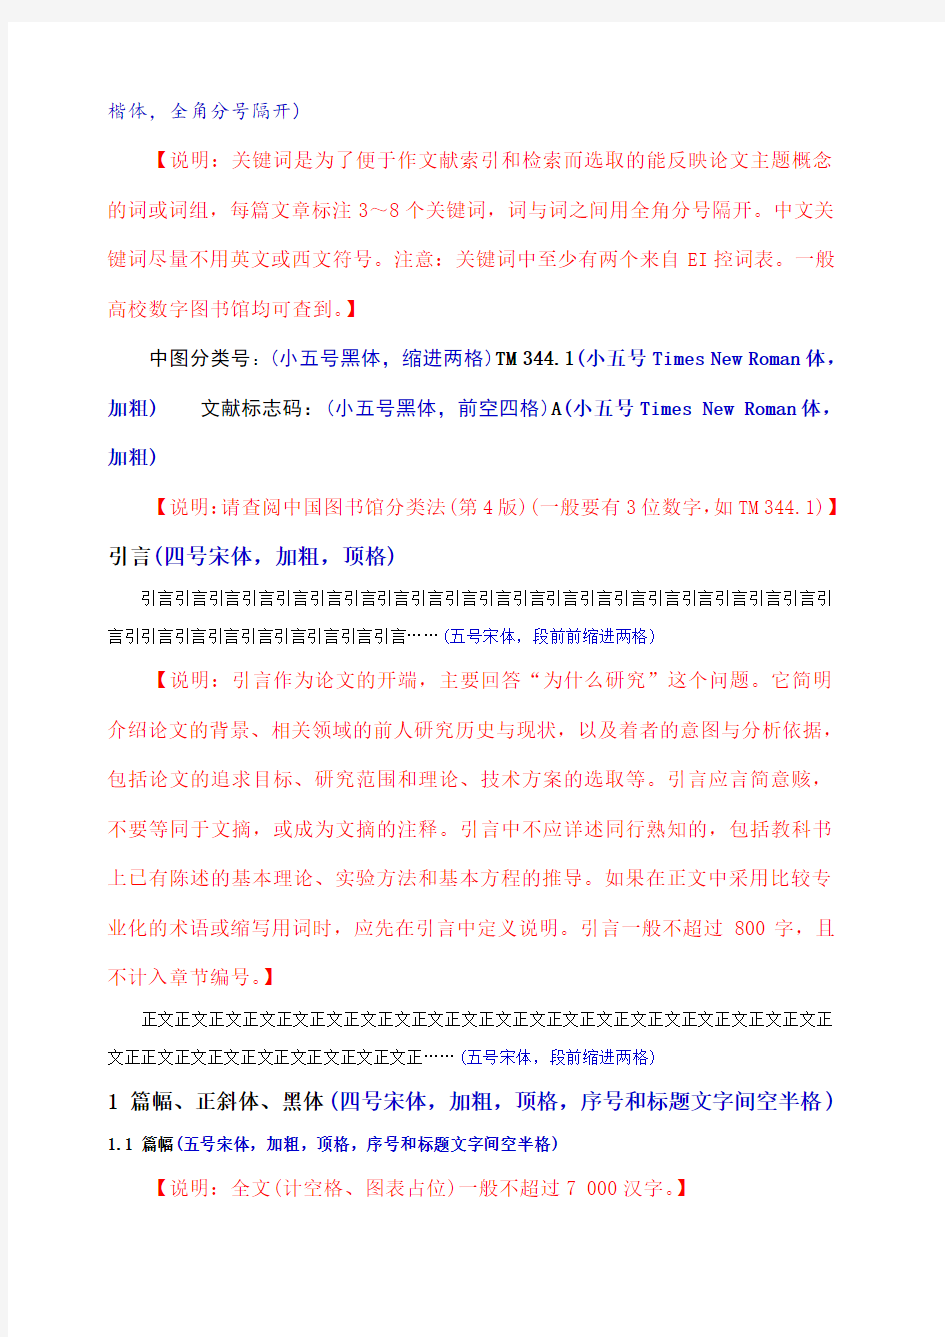 中文核心期刊论文含基本格式和内容要求